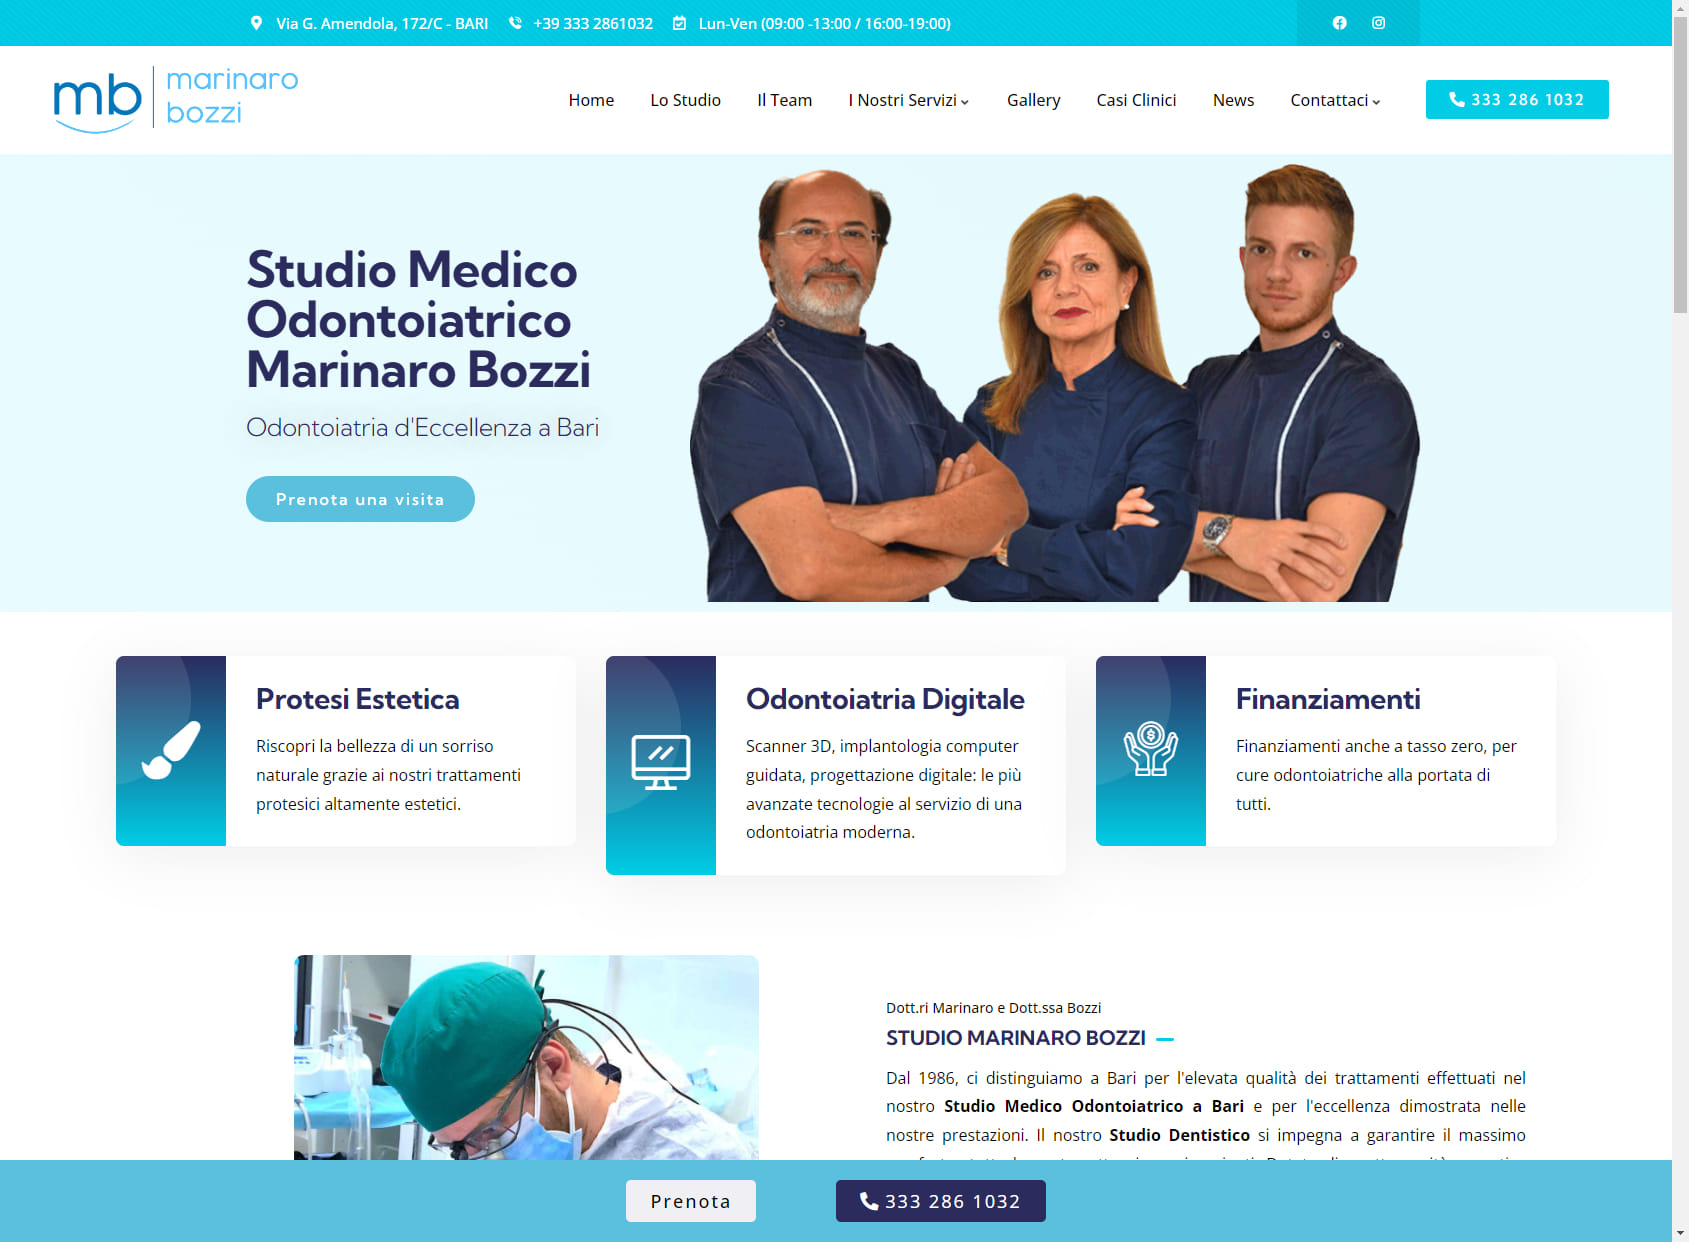 Studio Medico Odontoiatrico Marinaro Bozzi